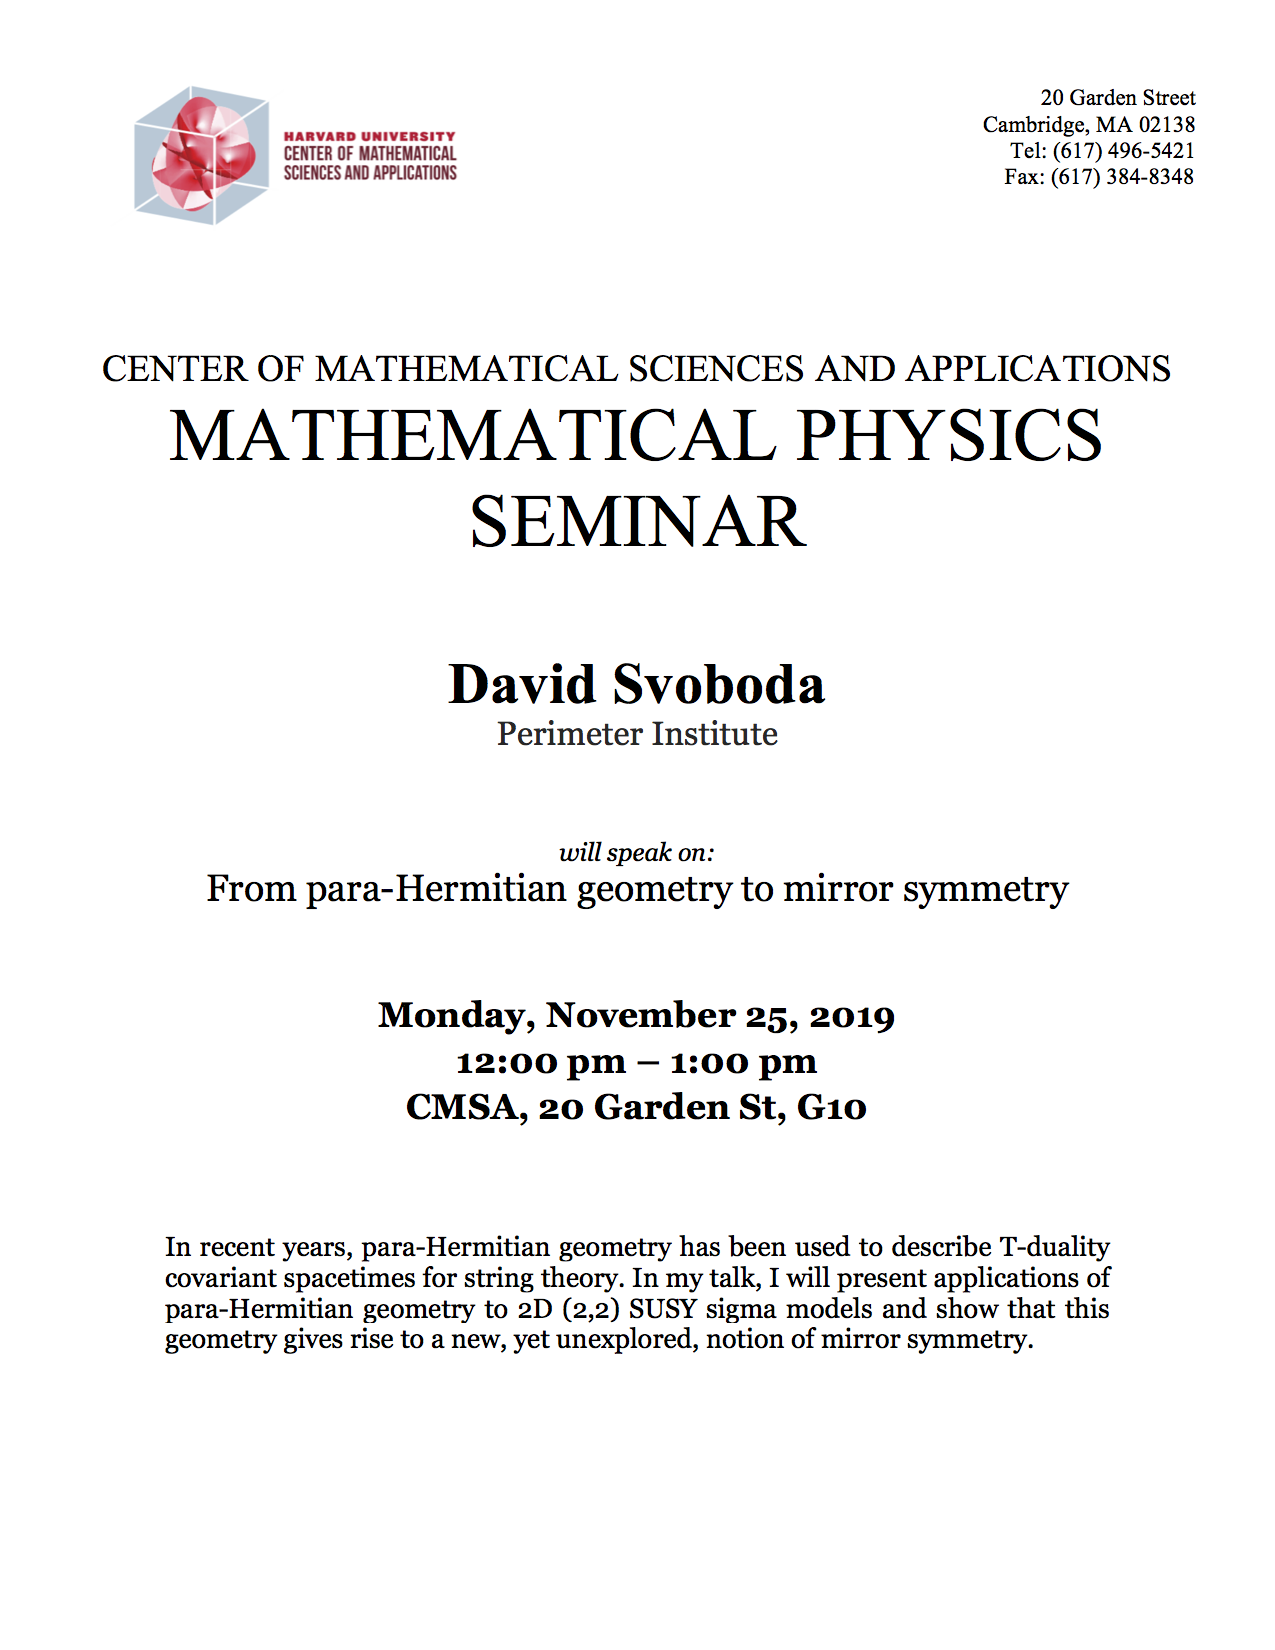 11/25/2019 Math Physics Seminar